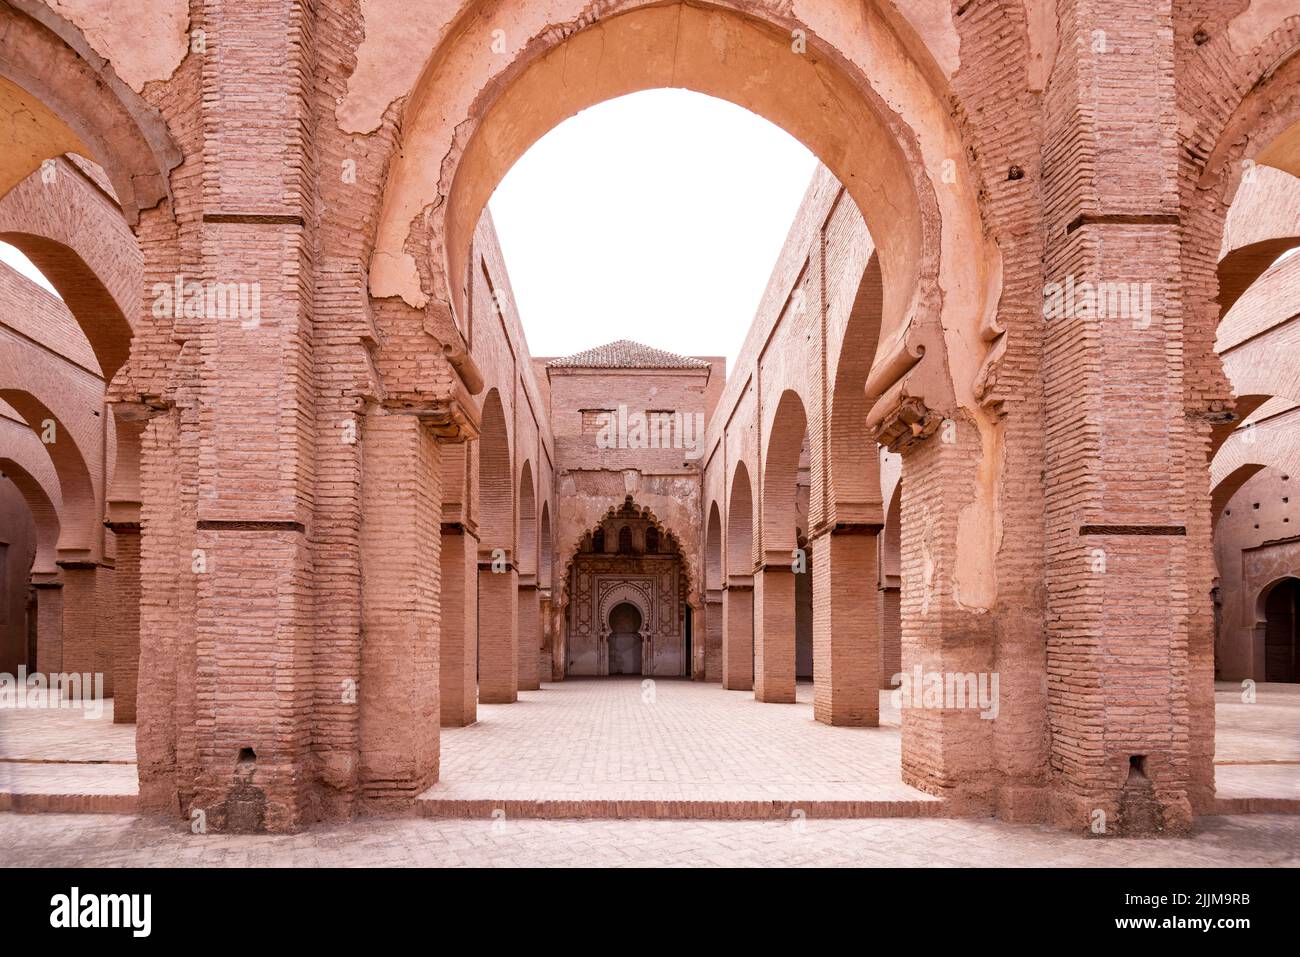 Innenarchitektur der TinMal Moschee - Marokko Stockfoto